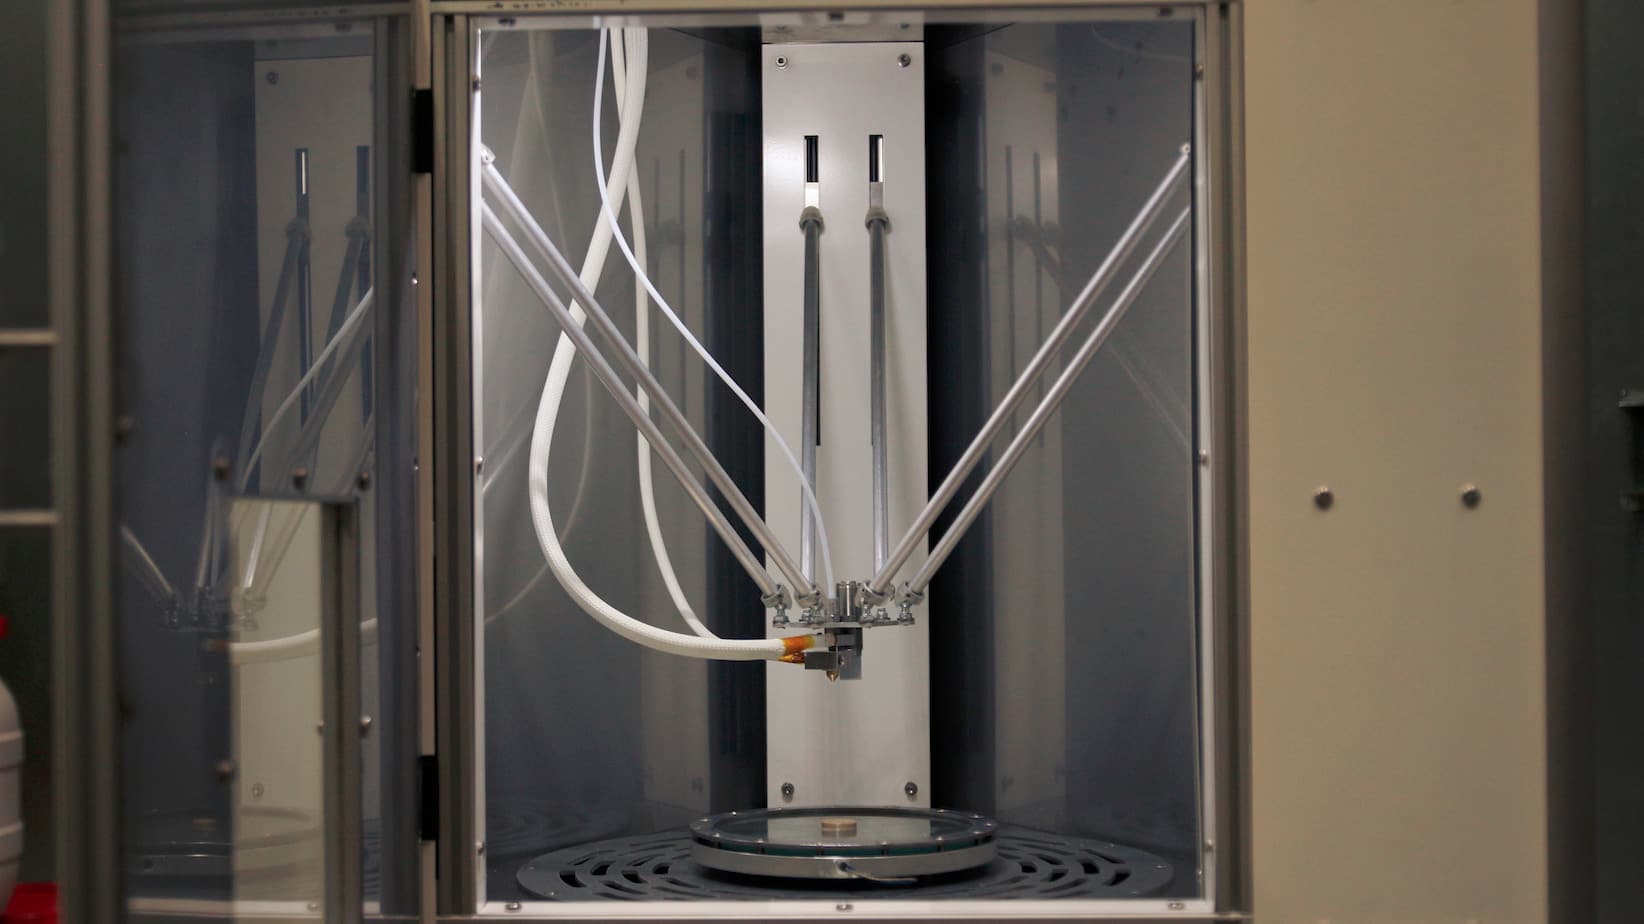 KUMOVIS 3D printer for medical applications inner view